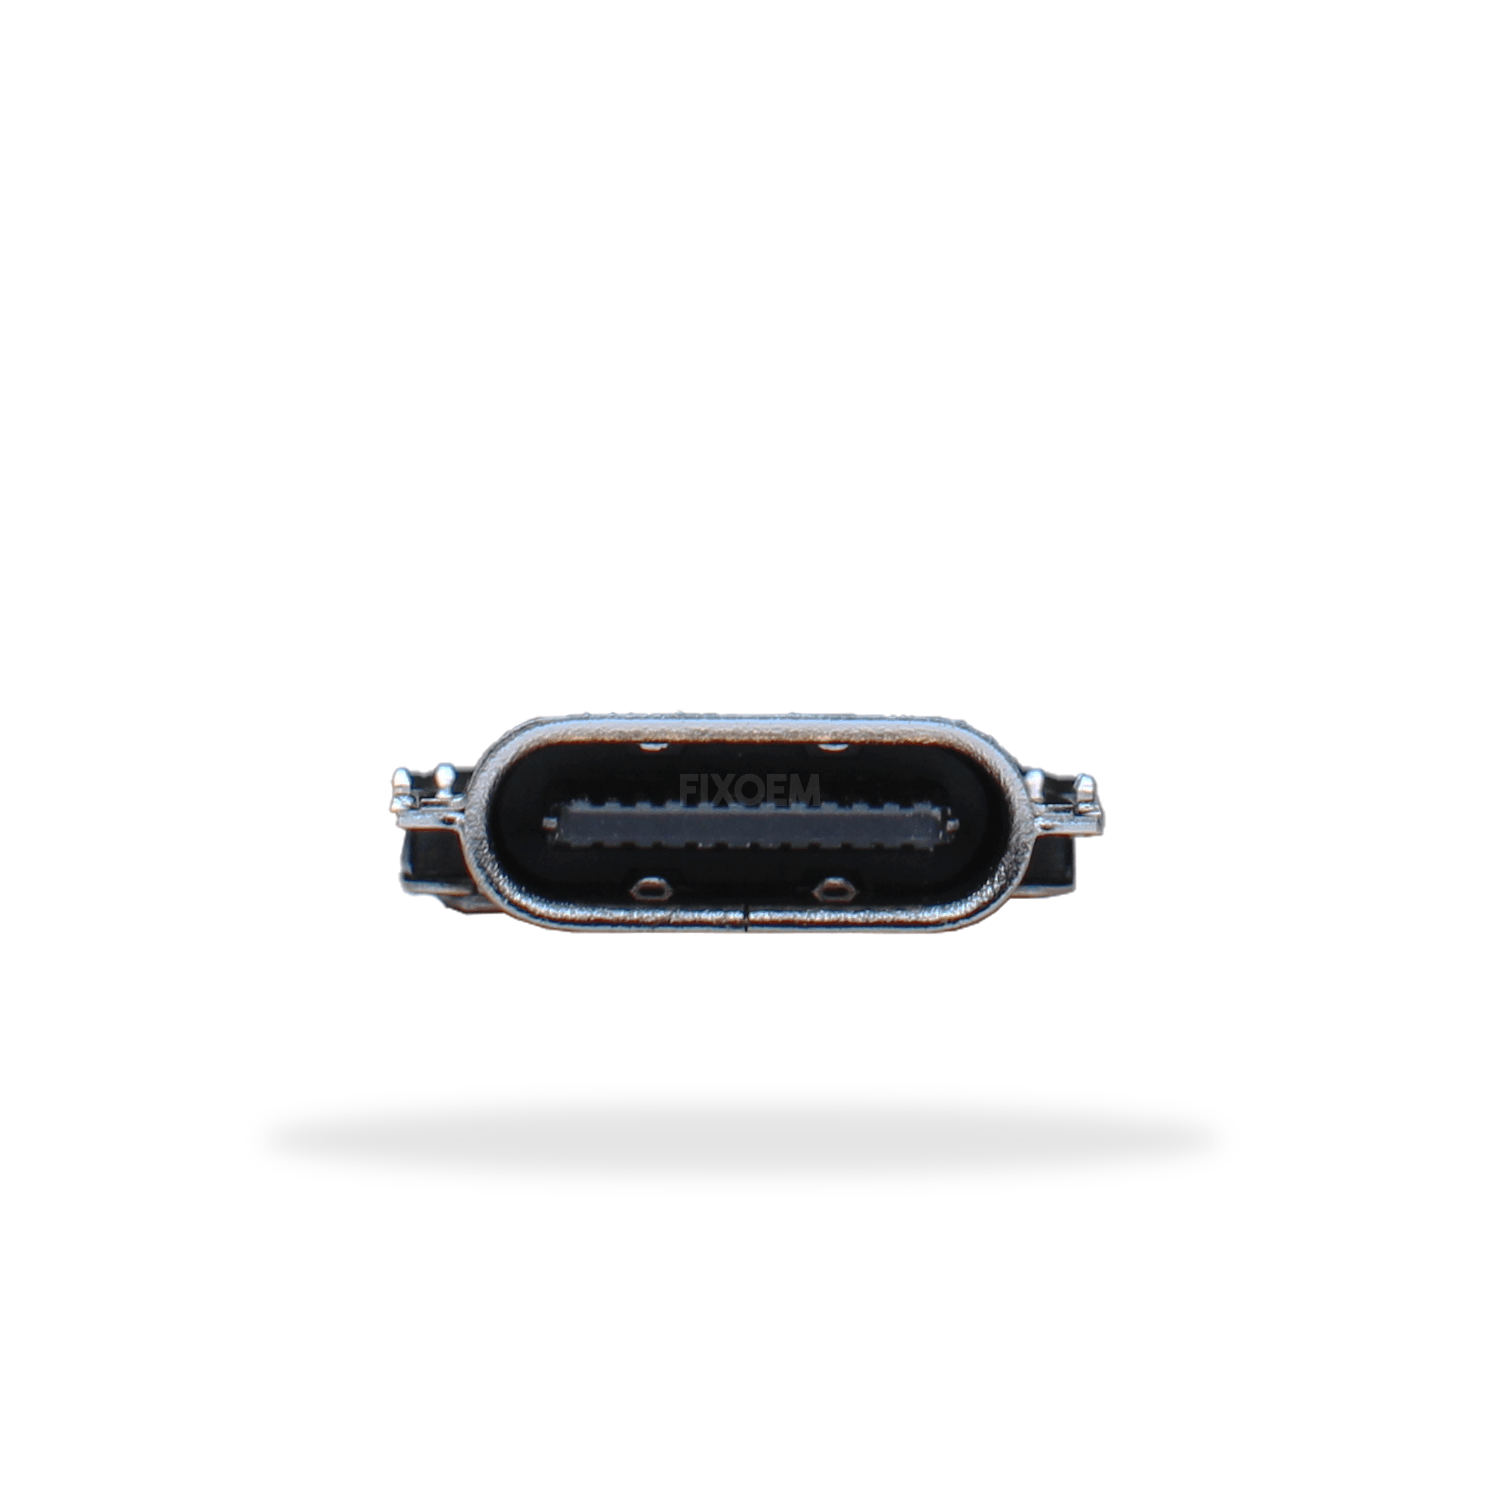 Pin Carga Moto One Zoom Xt2010 a solo $ 15.00 Refaccion y puestos celulares, refurbish y microelectronica.- FixOEM